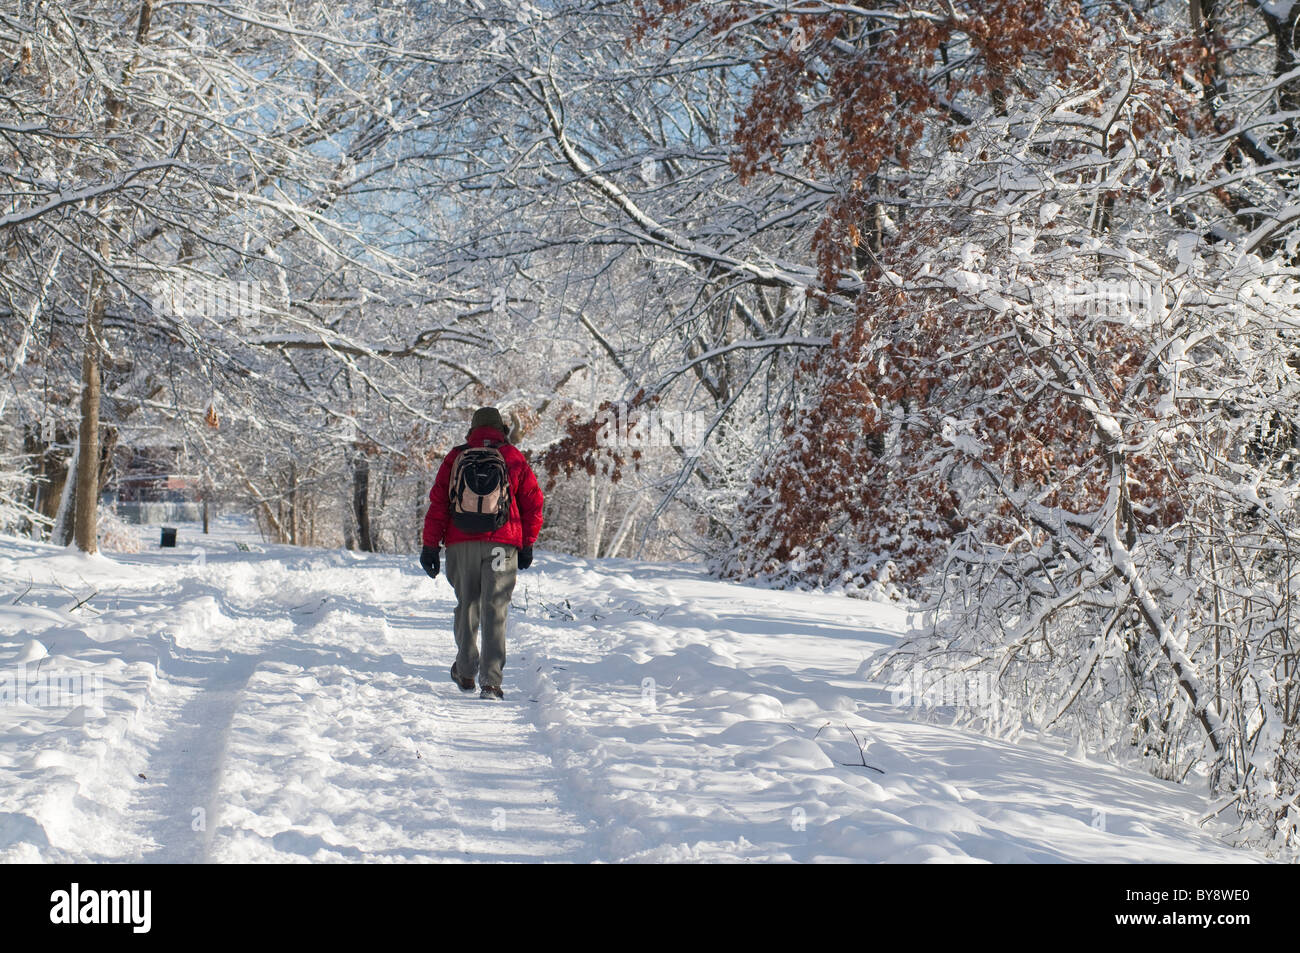 La navette à travers la neige dans un parc à Boston, MA. Banque D'Images